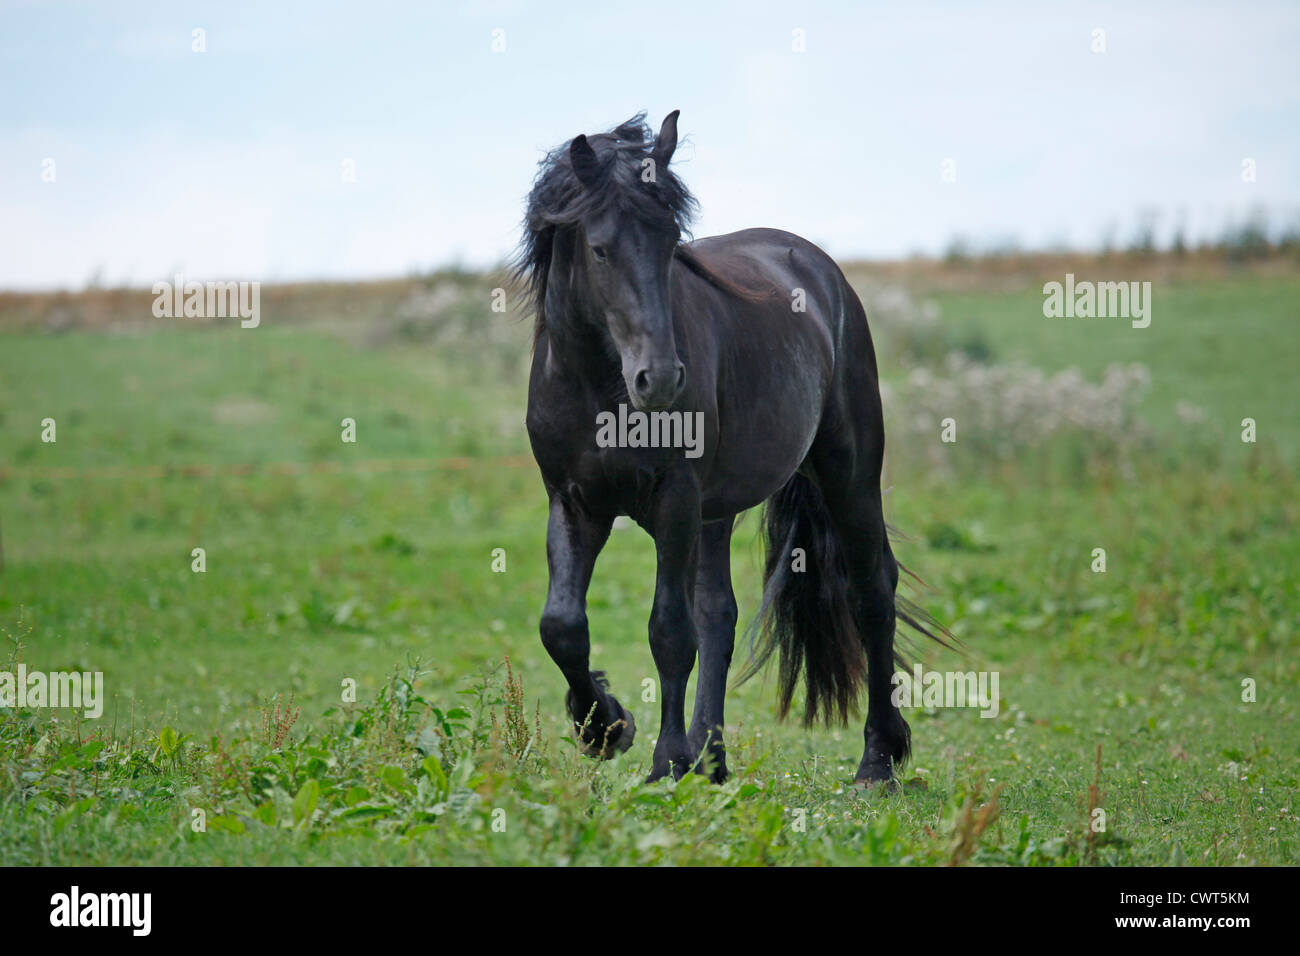 junger Friesenhengst / young Friesian horse stallion Stock Photo